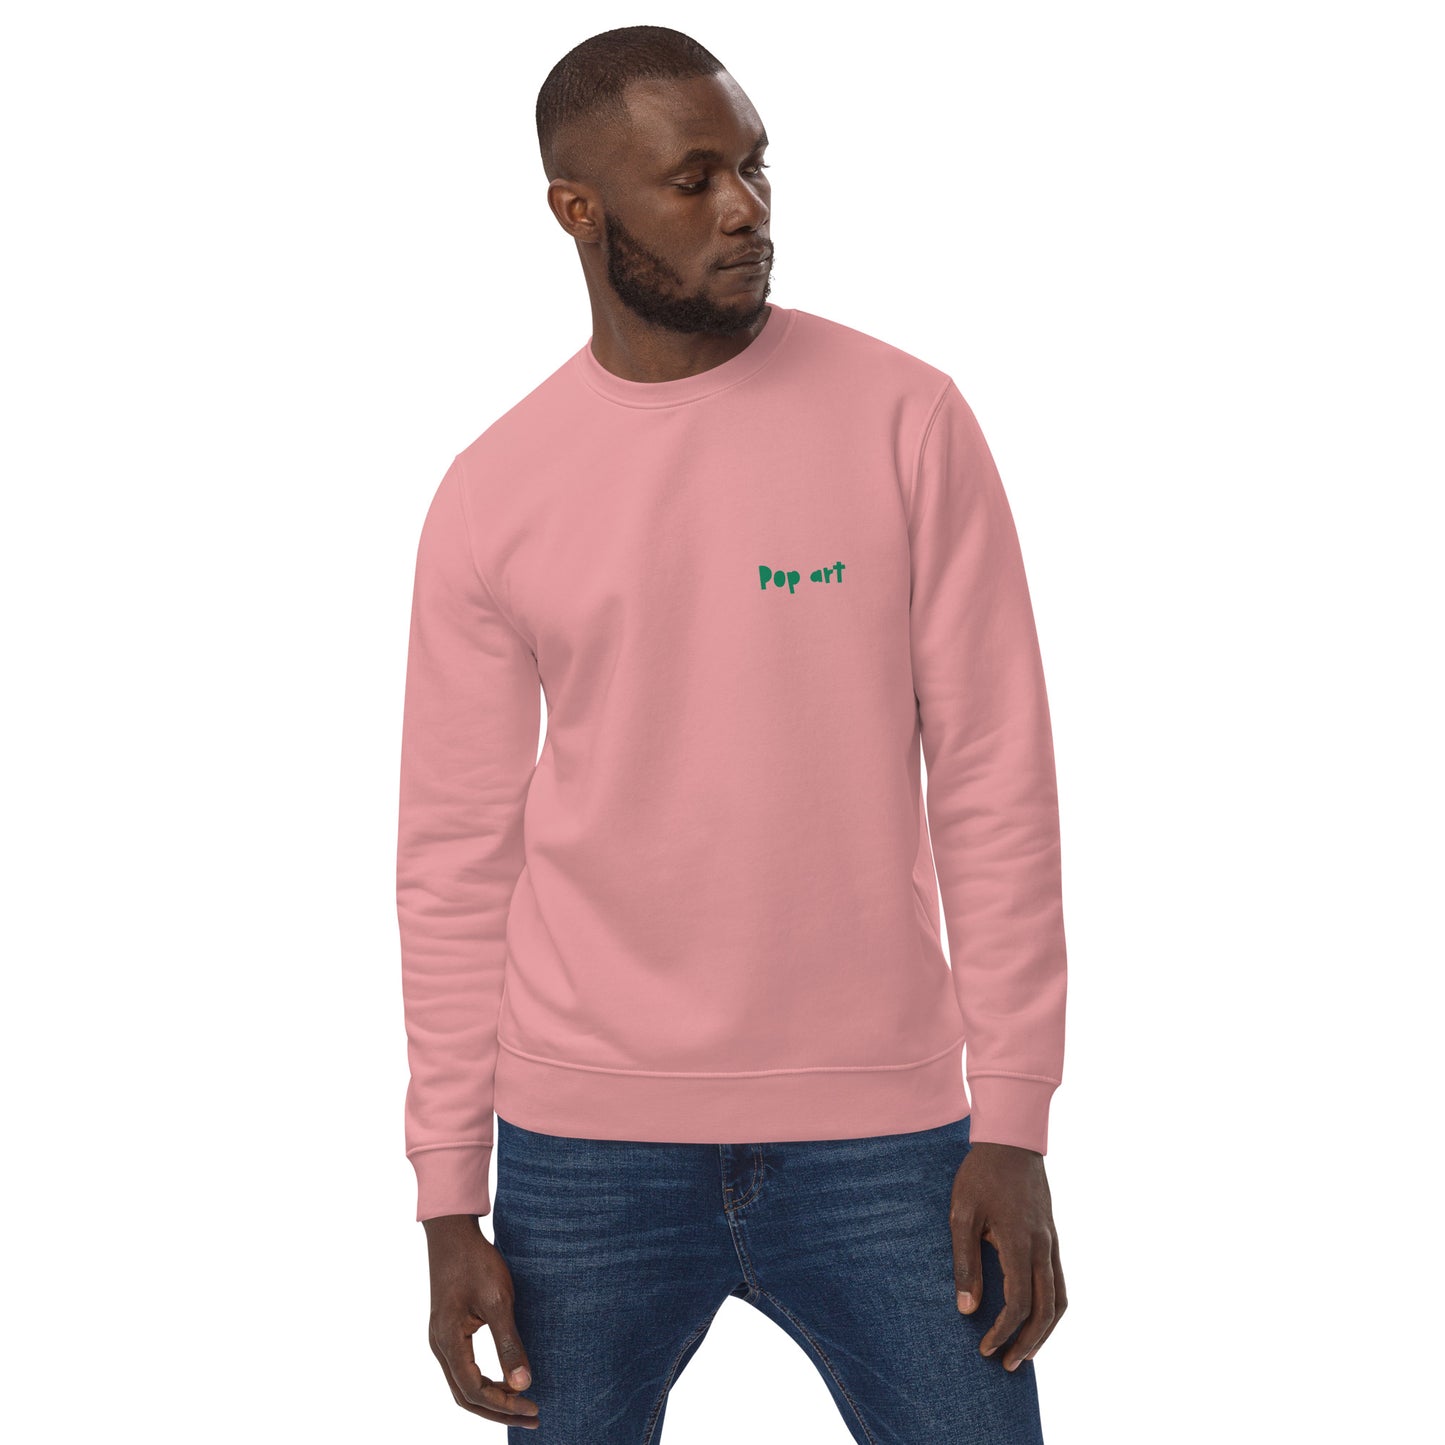 Unisex eco sweatshirt with pop art Wow design (Vecteezy.com)